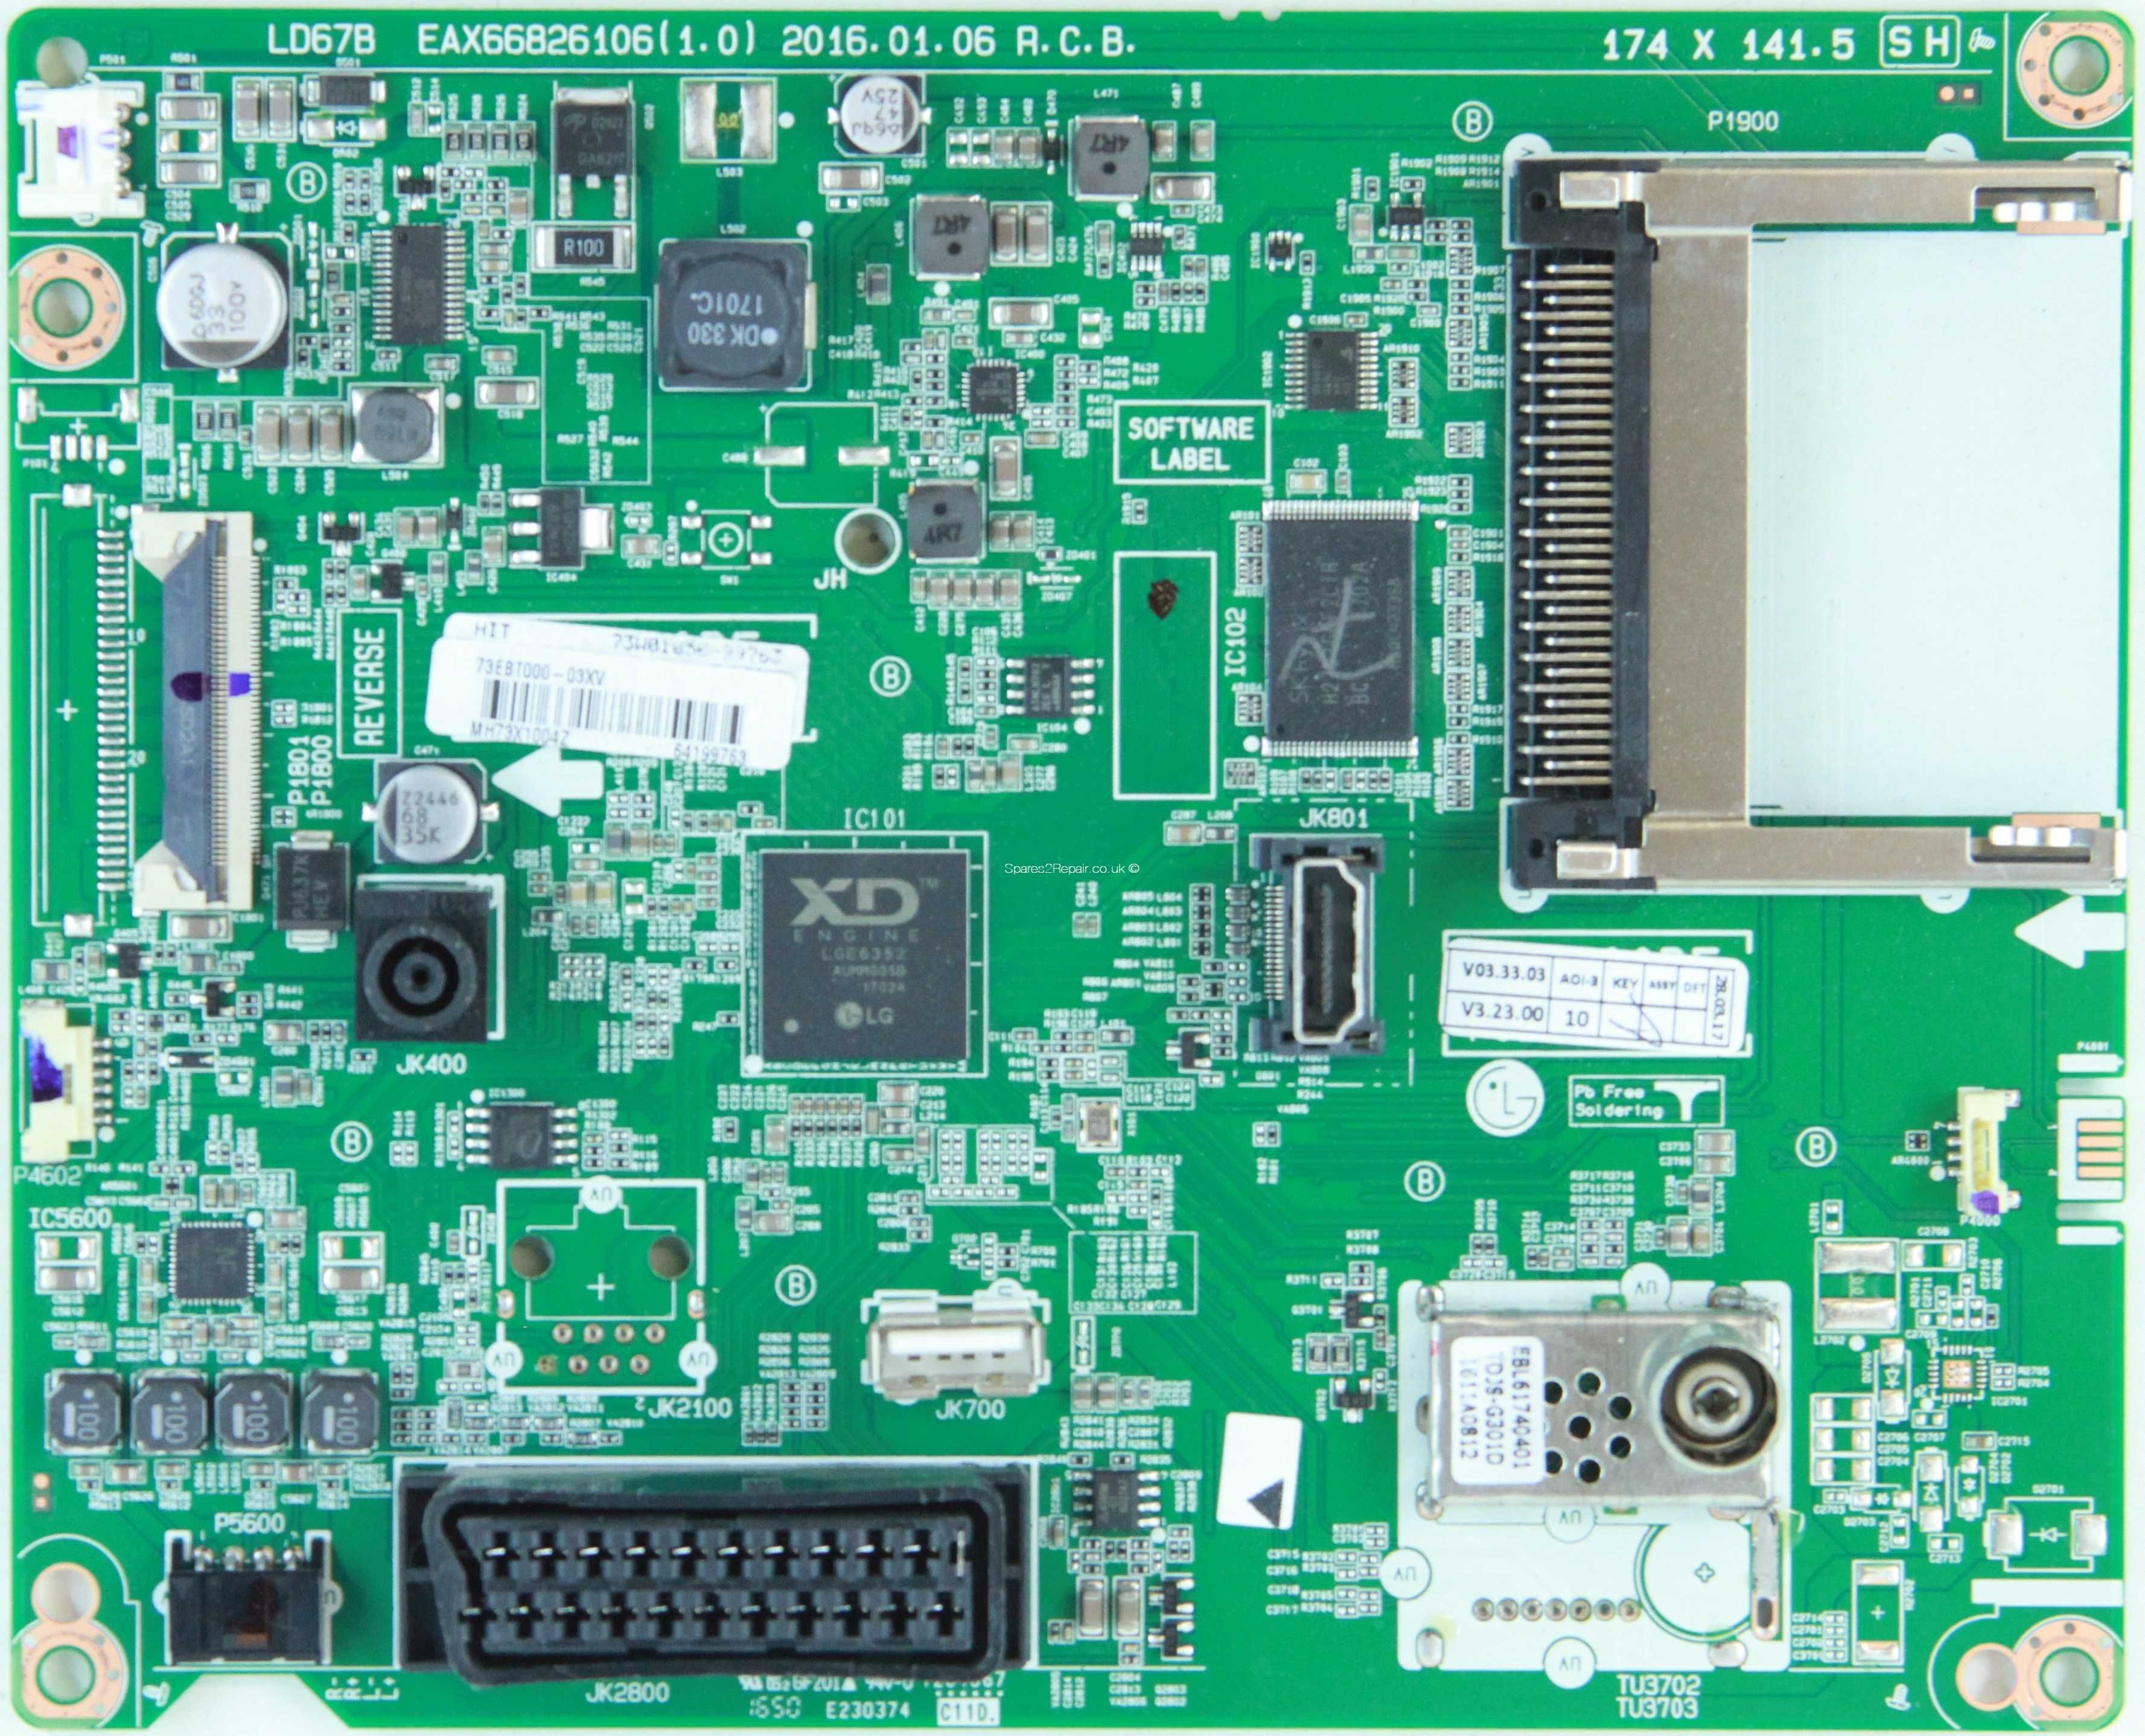 Placa de baza LG, model EAX66826106 (1.0)